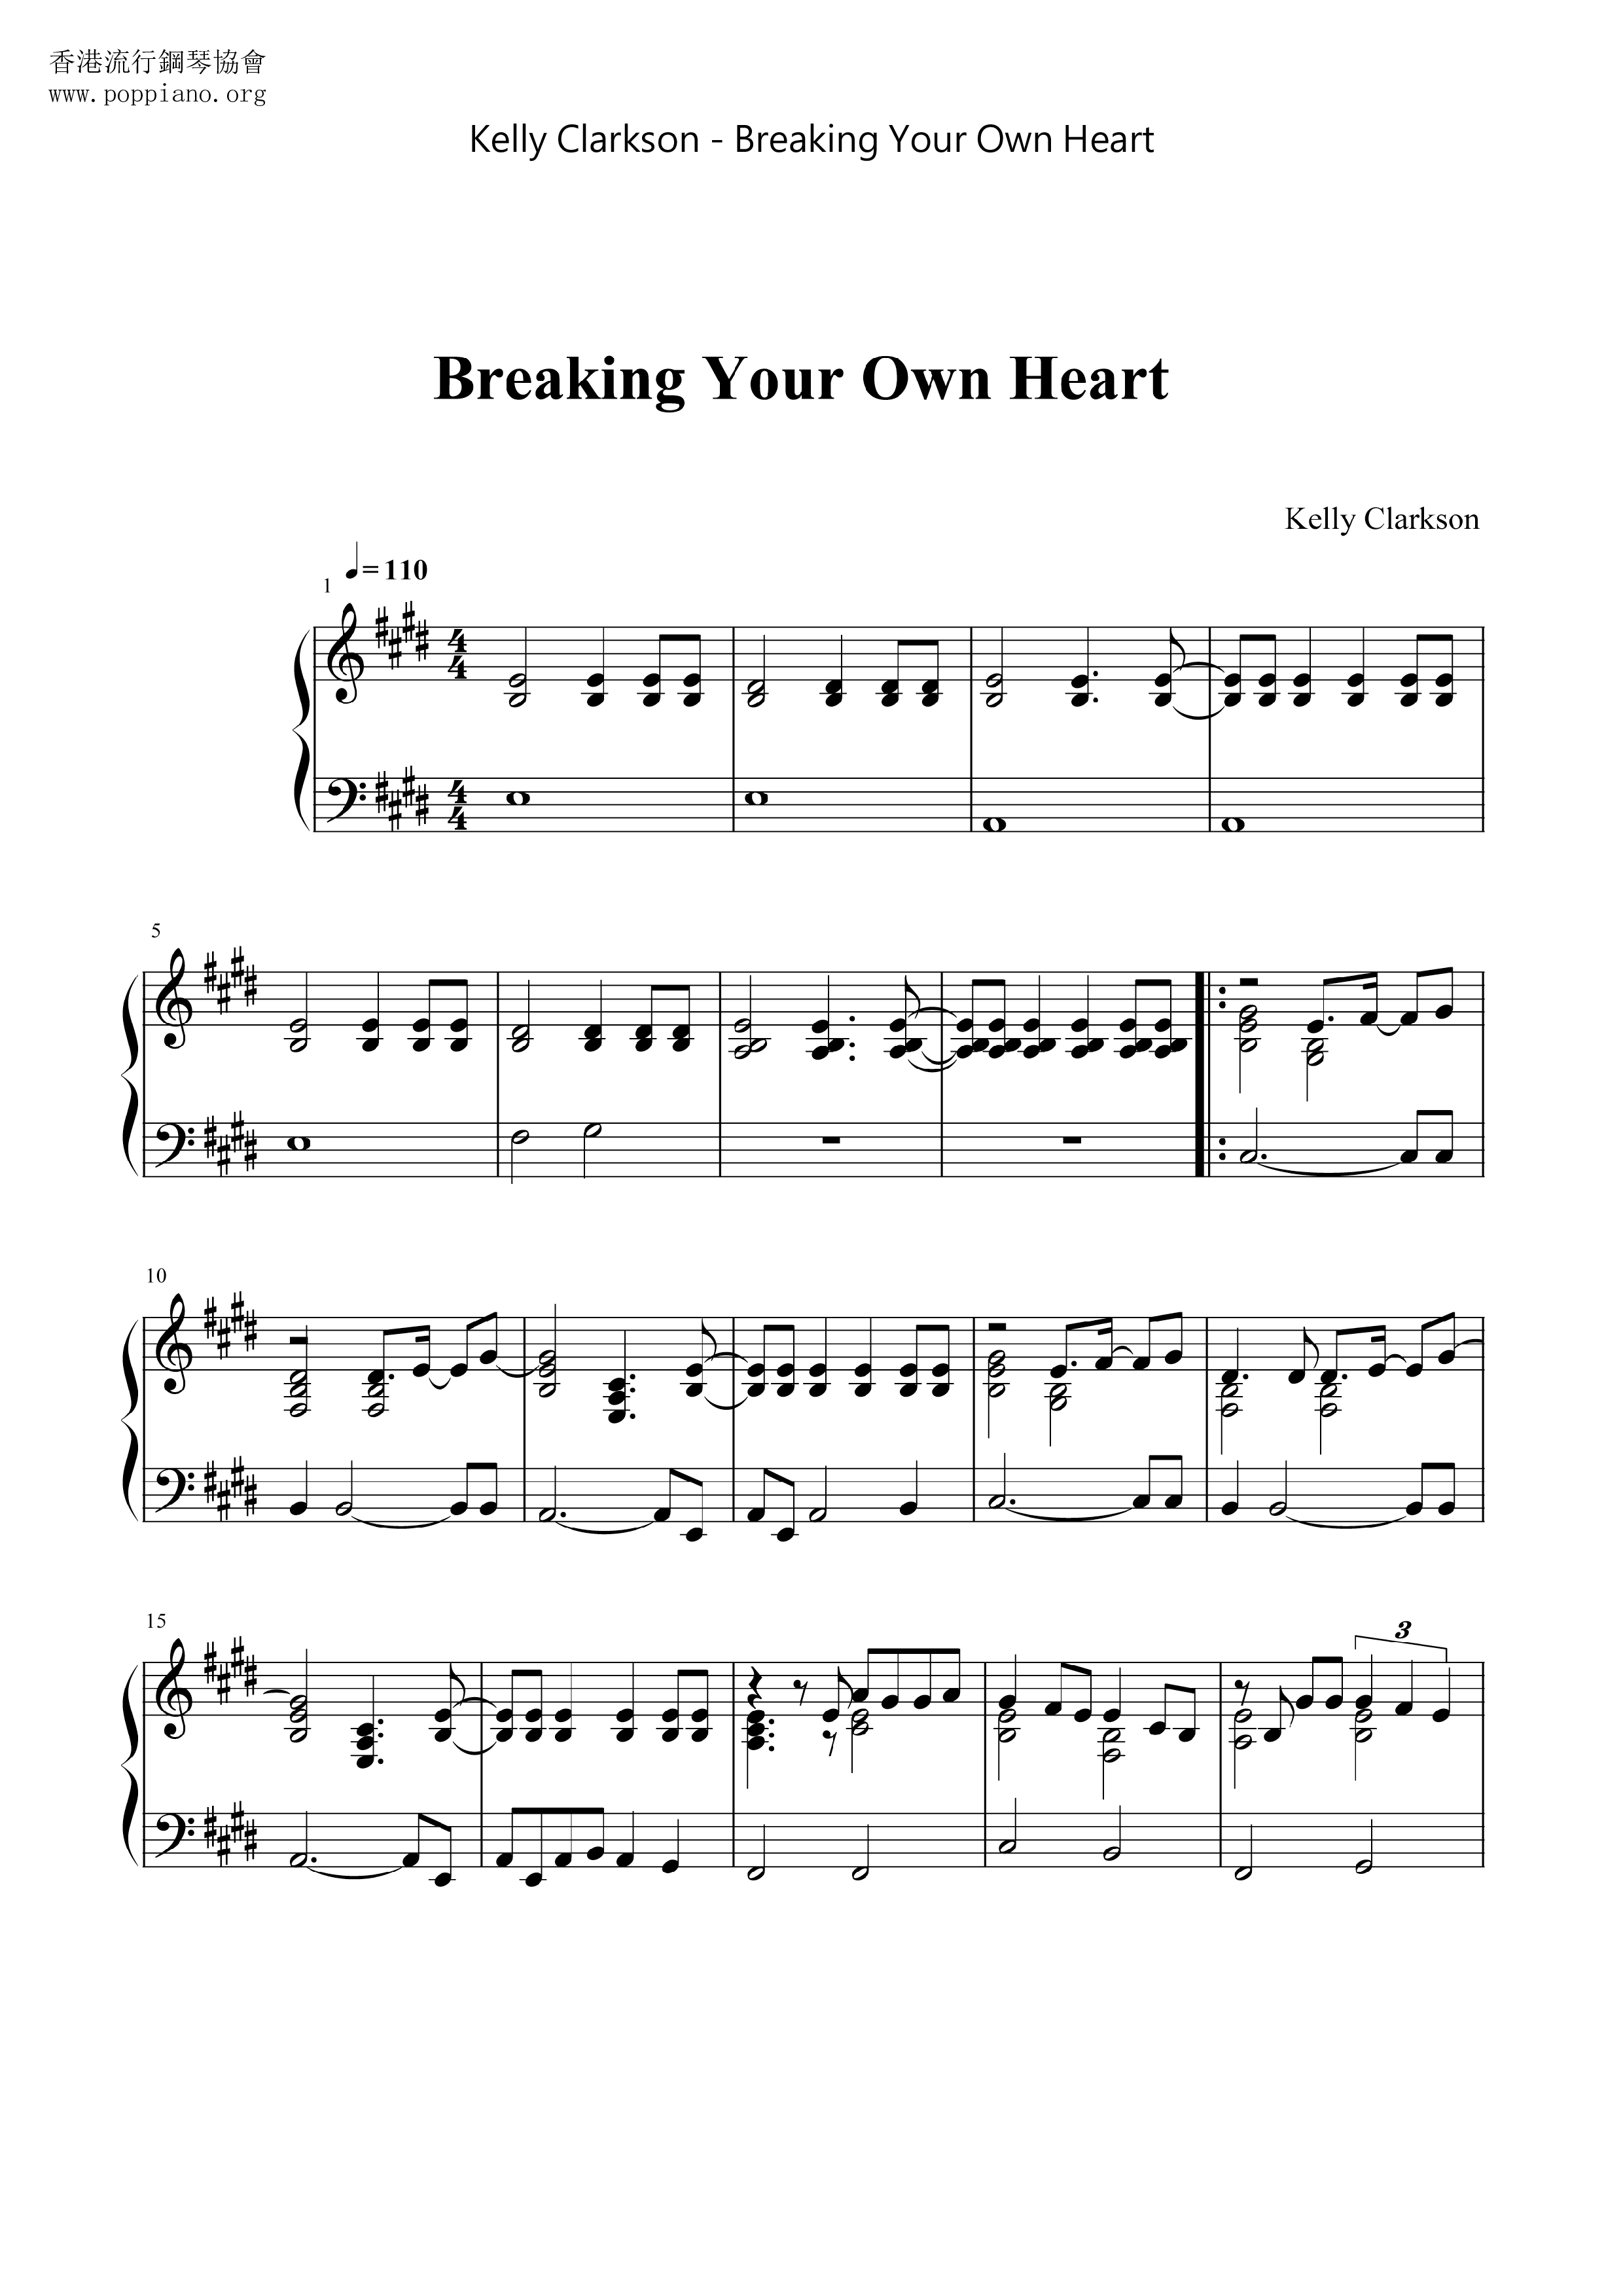 Breaking Your Own Heart Score